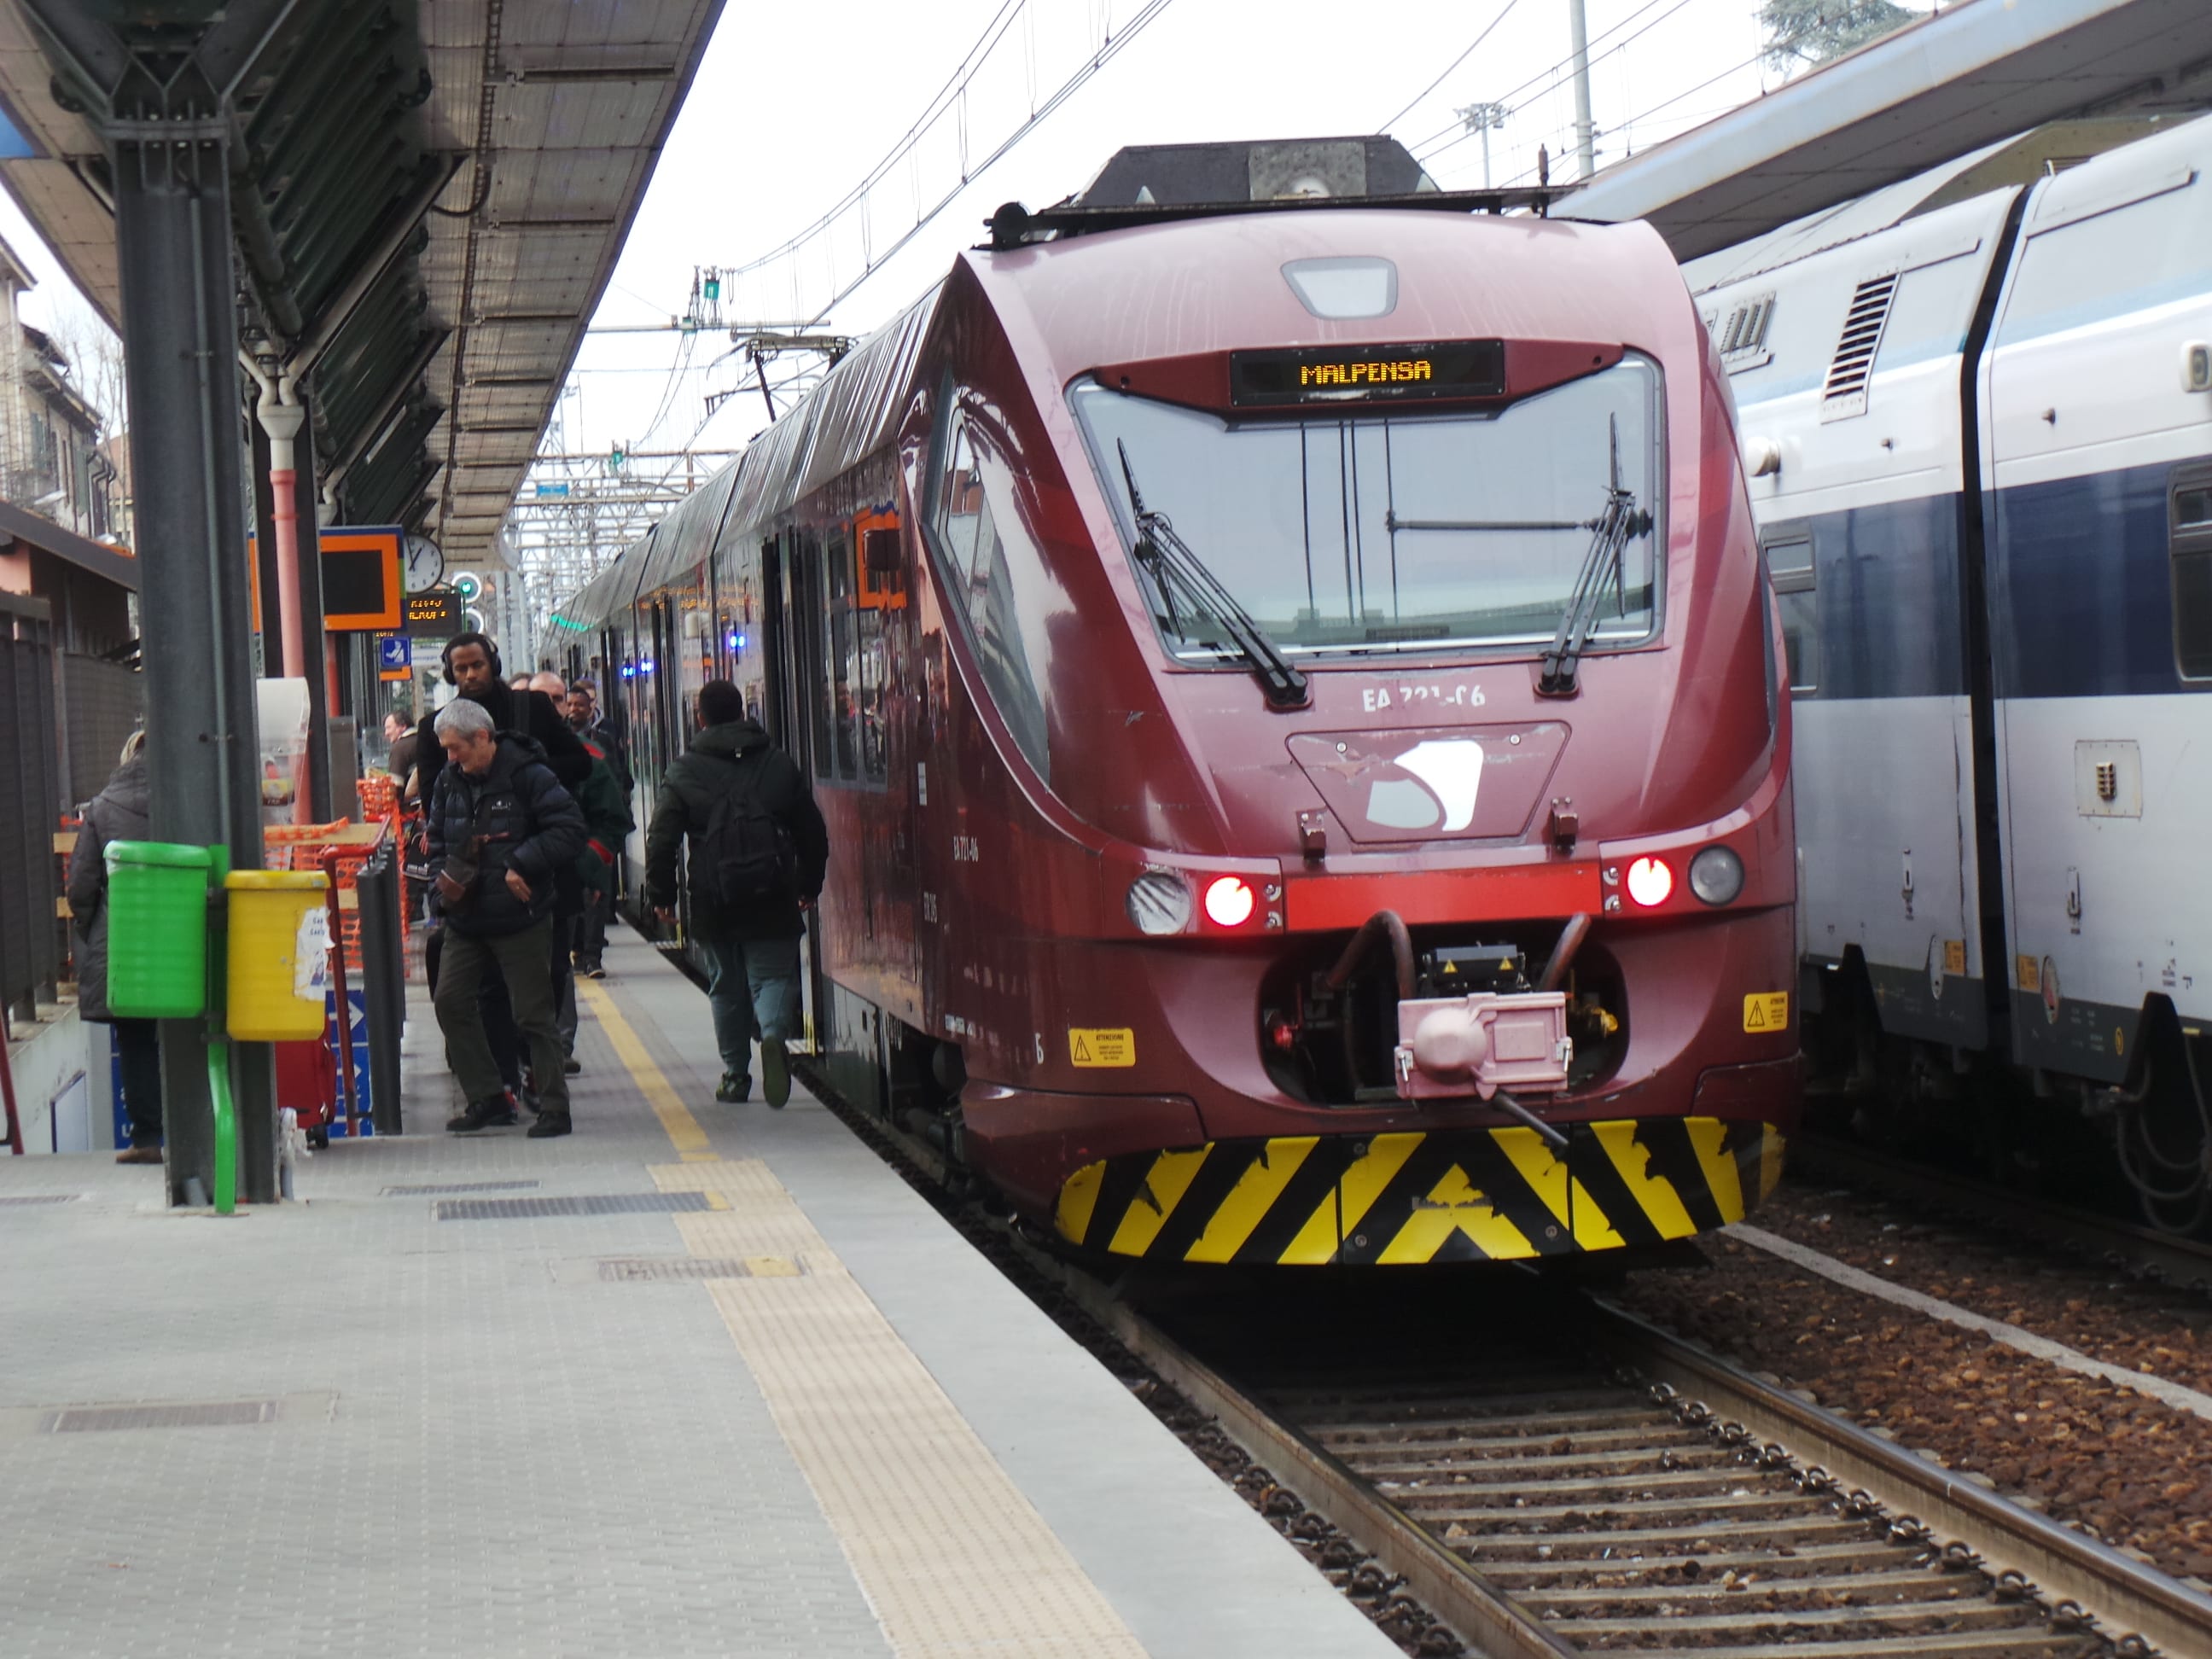 Ferrovia: scassinate le cabine della linea Malpensa express